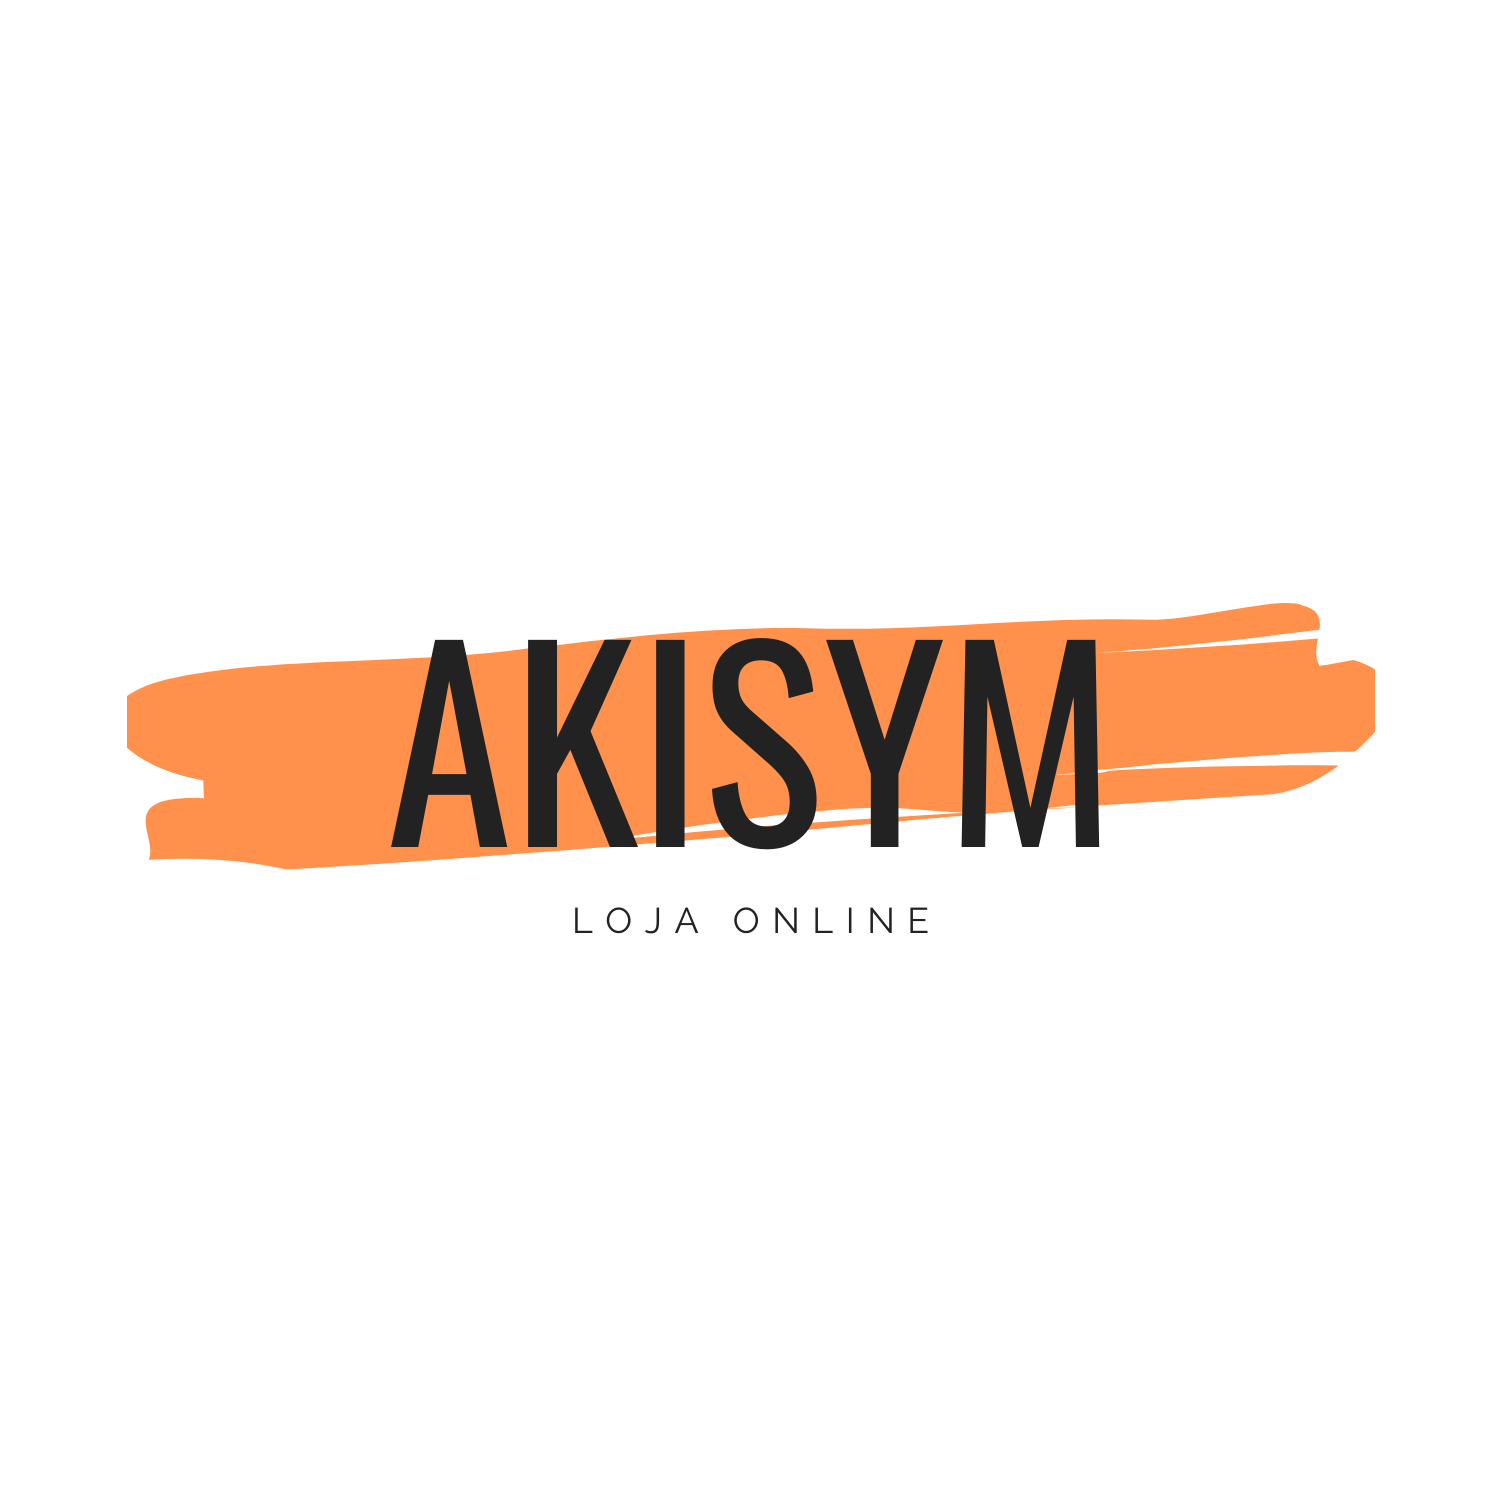 Akisym